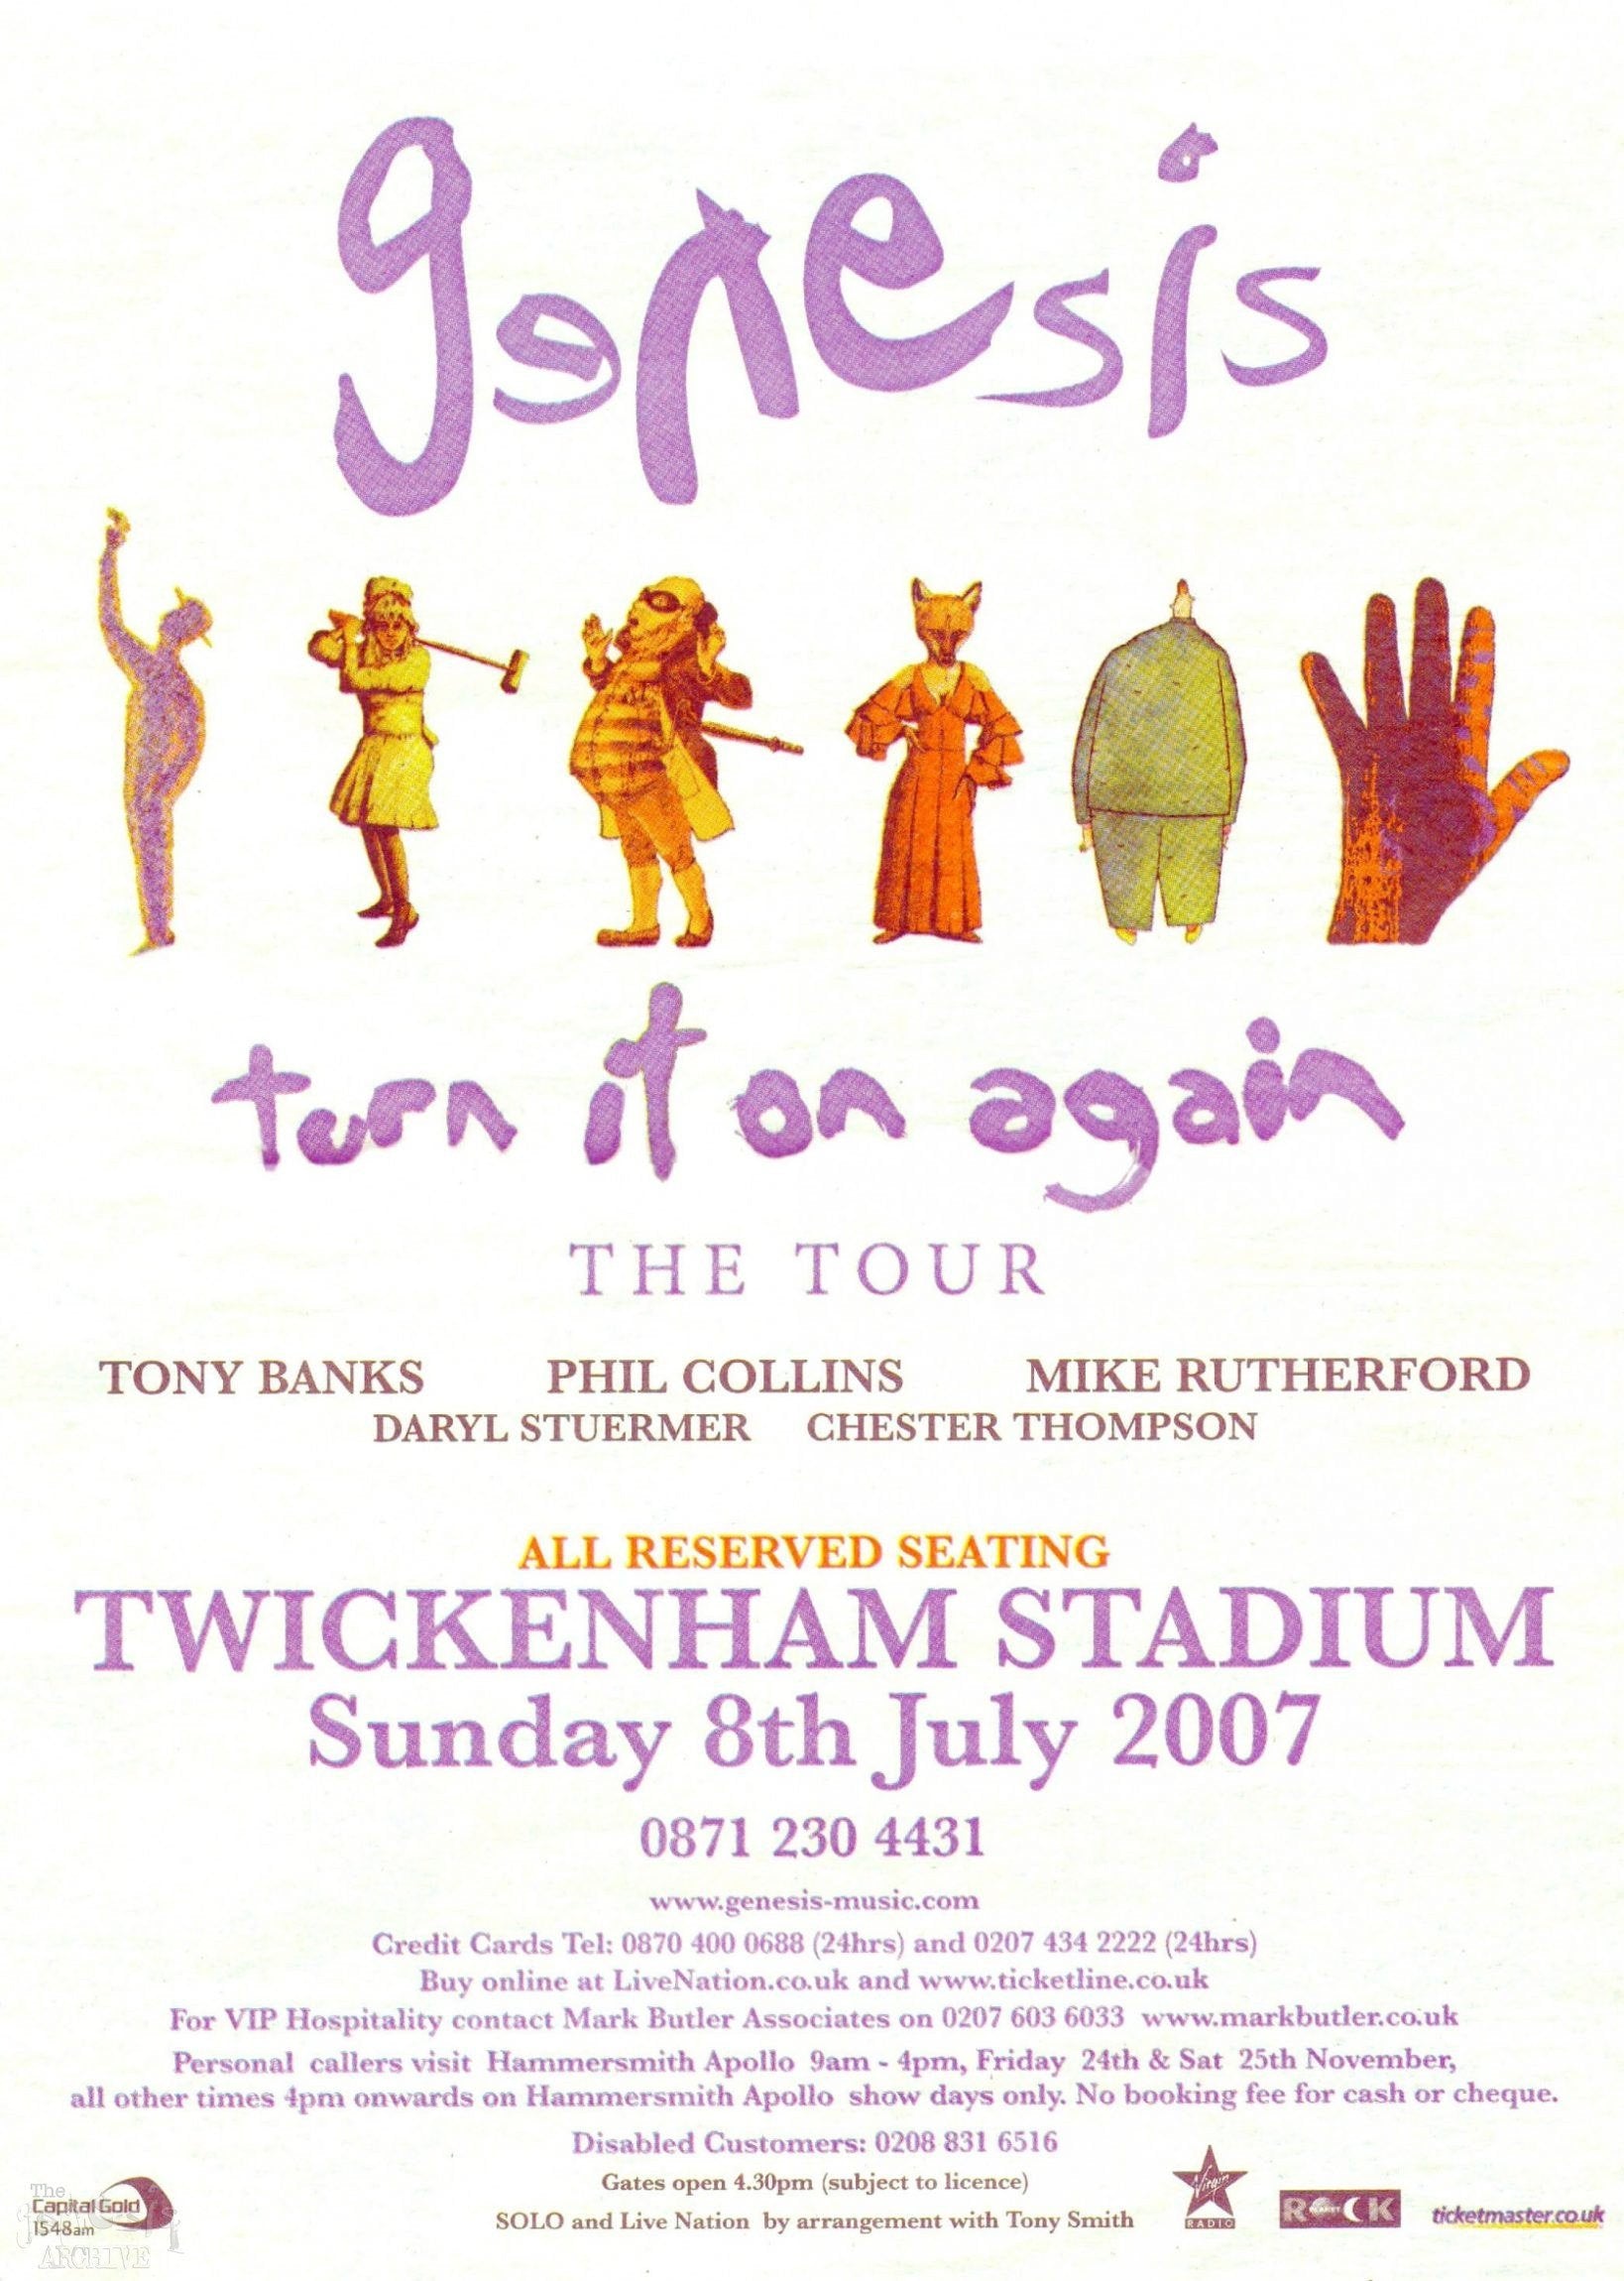 Vintage Music Art The - Genesis On Tour - Turn It On Again Twickenham 0709